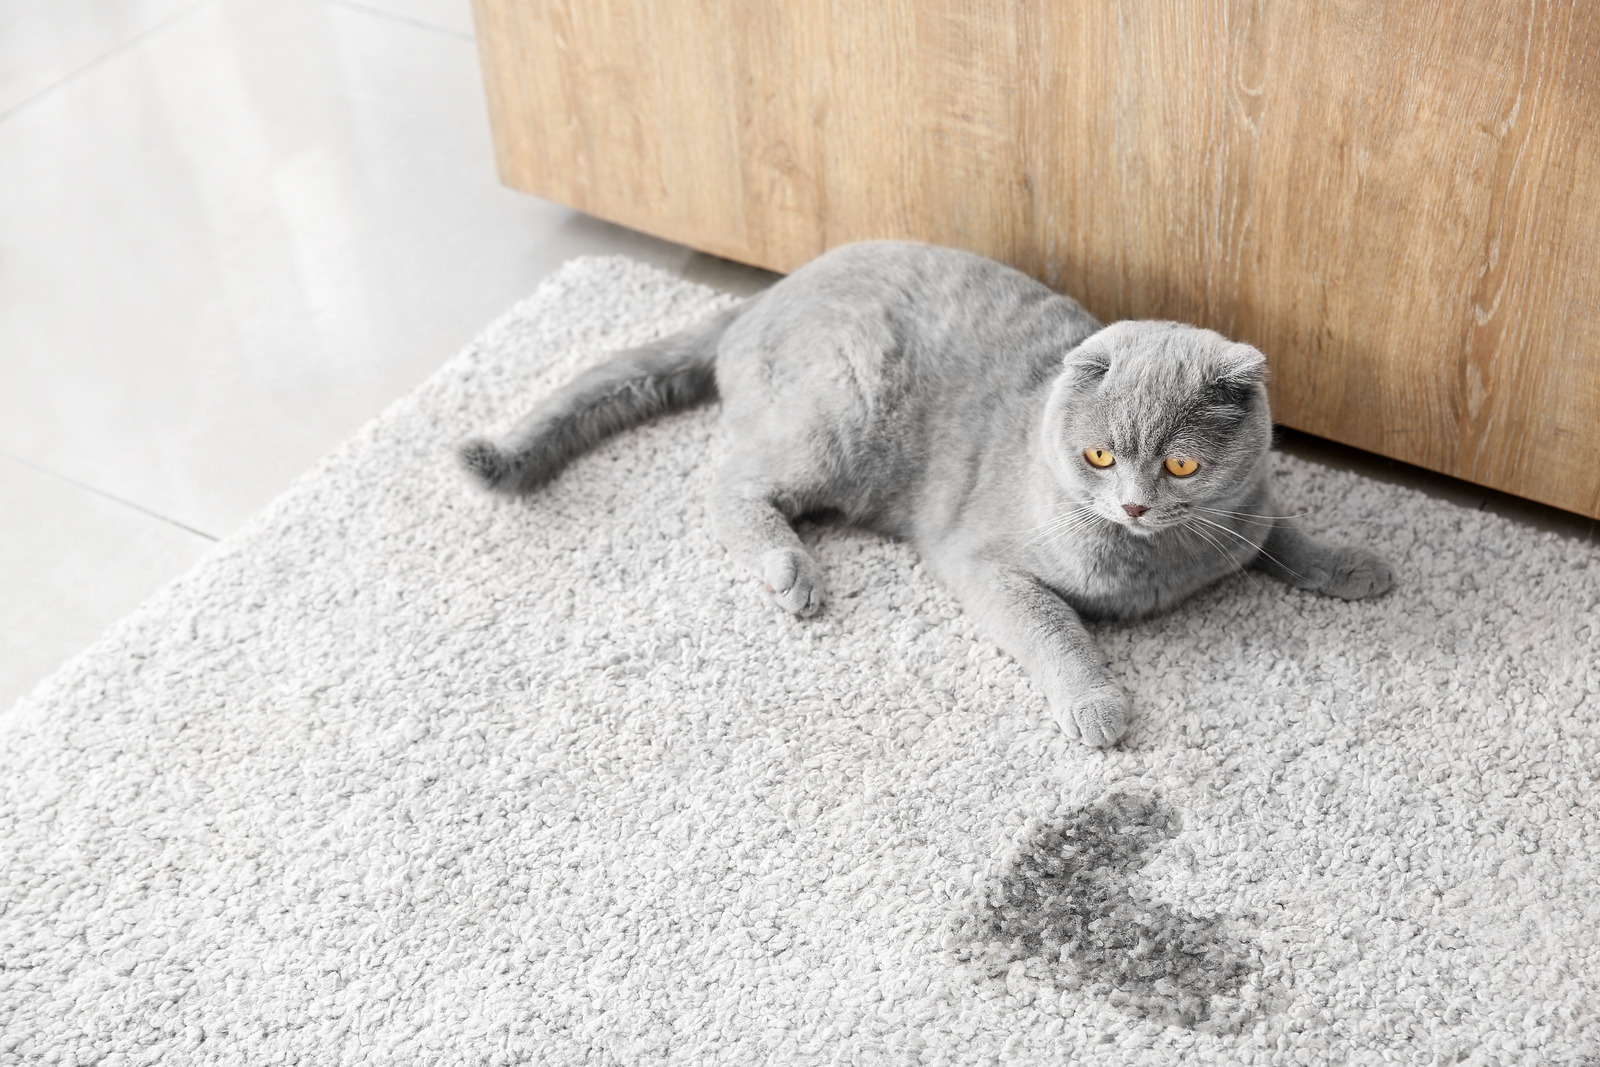 Grijze Britse korthaar kat ligt op tapijt naast plasje, heeft in huis geplast